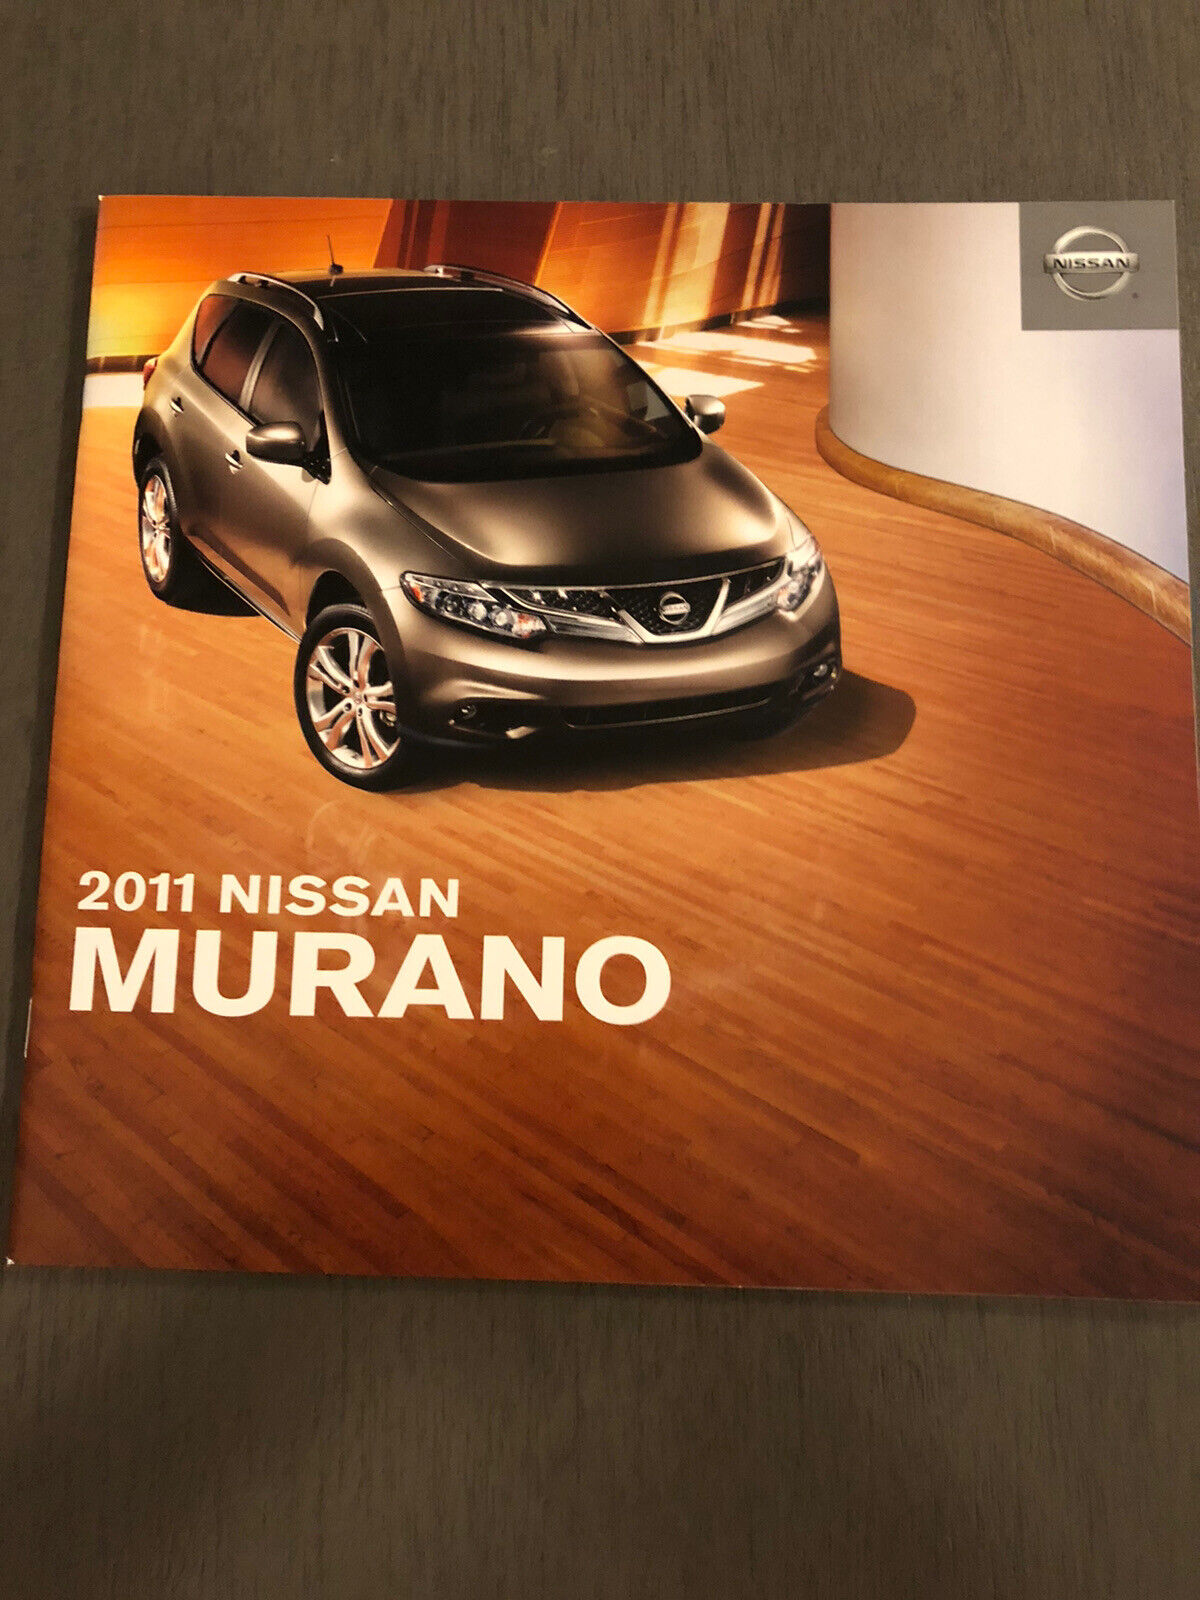 2011 NISSAN MURANO 34-page Original Sales Brochure